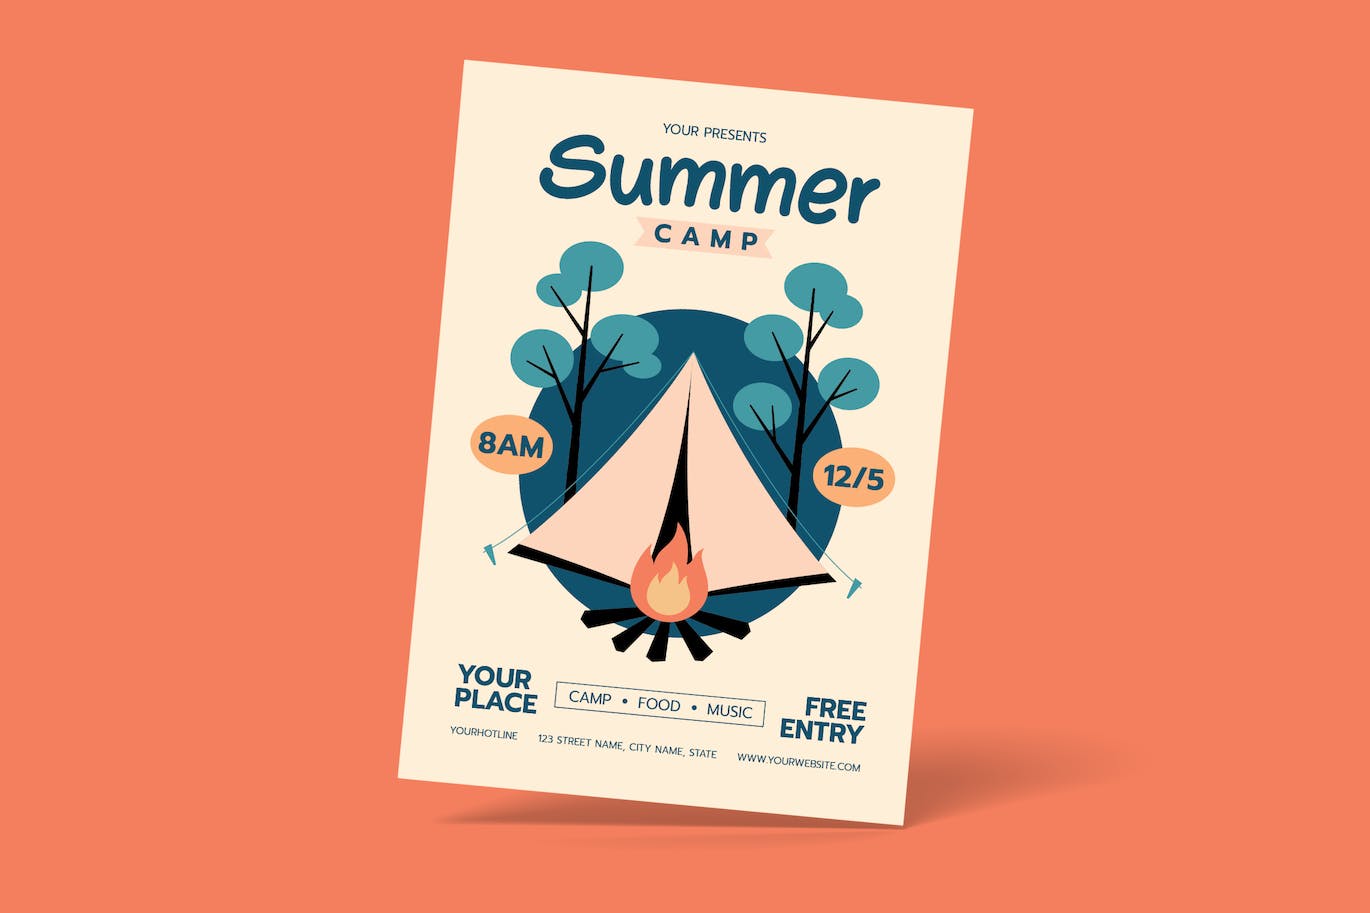 暑假露营旅行活动海报传单设计模板 Summer Camp Flyer 设计素材 第1张